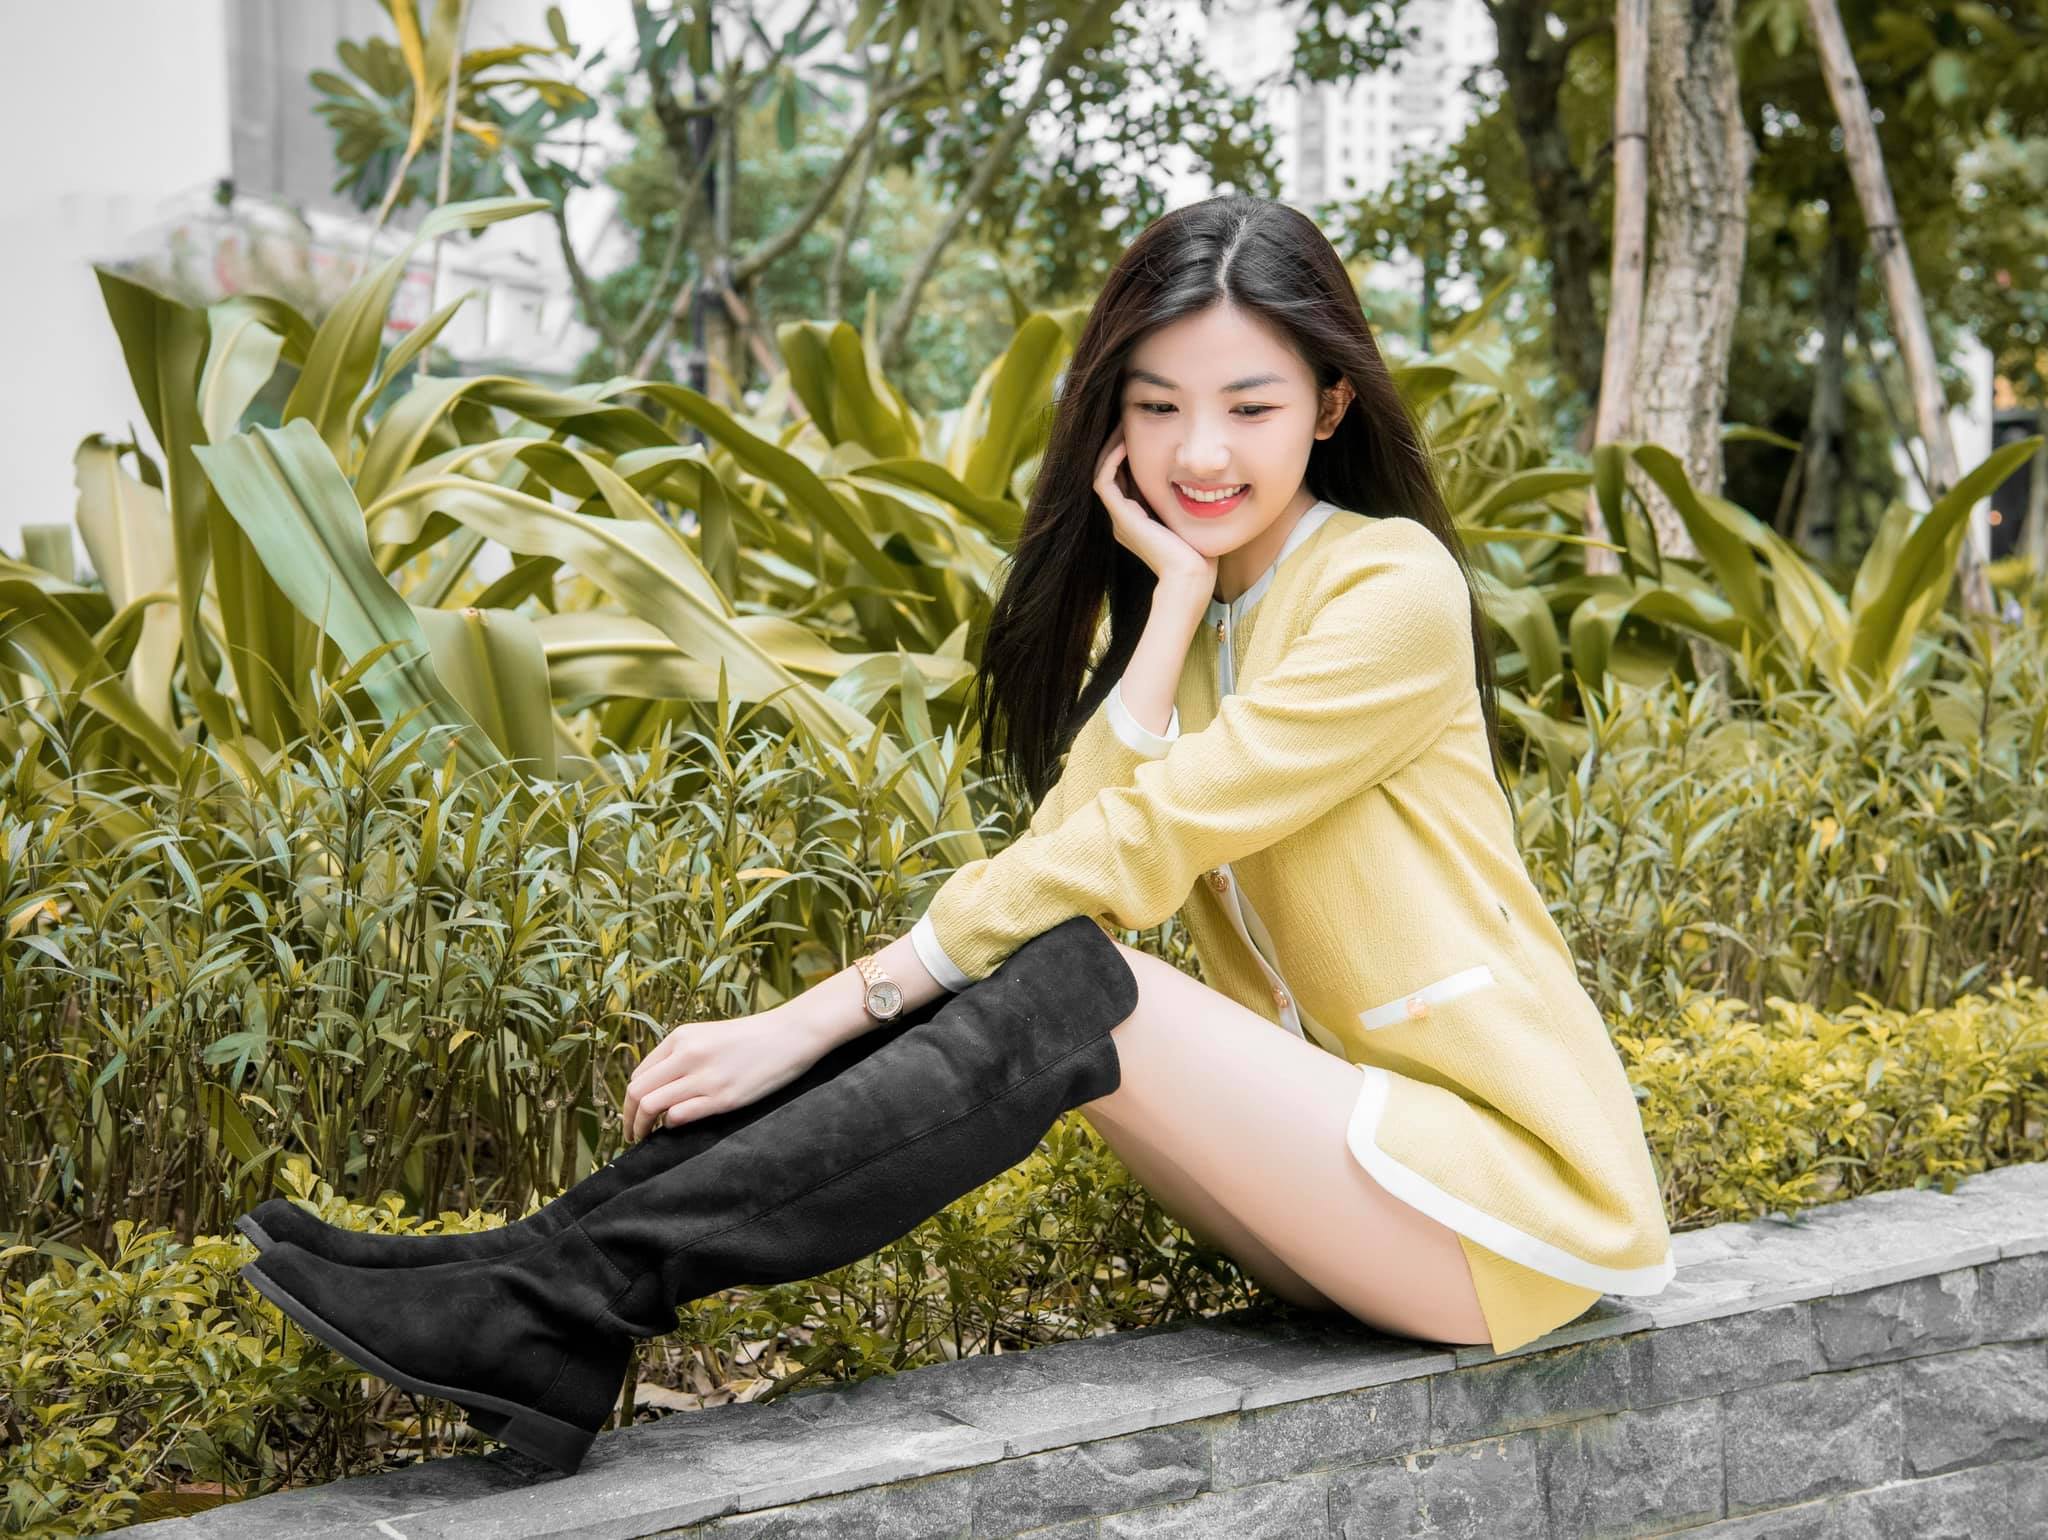 Nữ diễn viên quê Thanh Hóa mặt xinh, dáng đẹp cao hơn 1m70 chẳng thua kém hoa hậu - 7